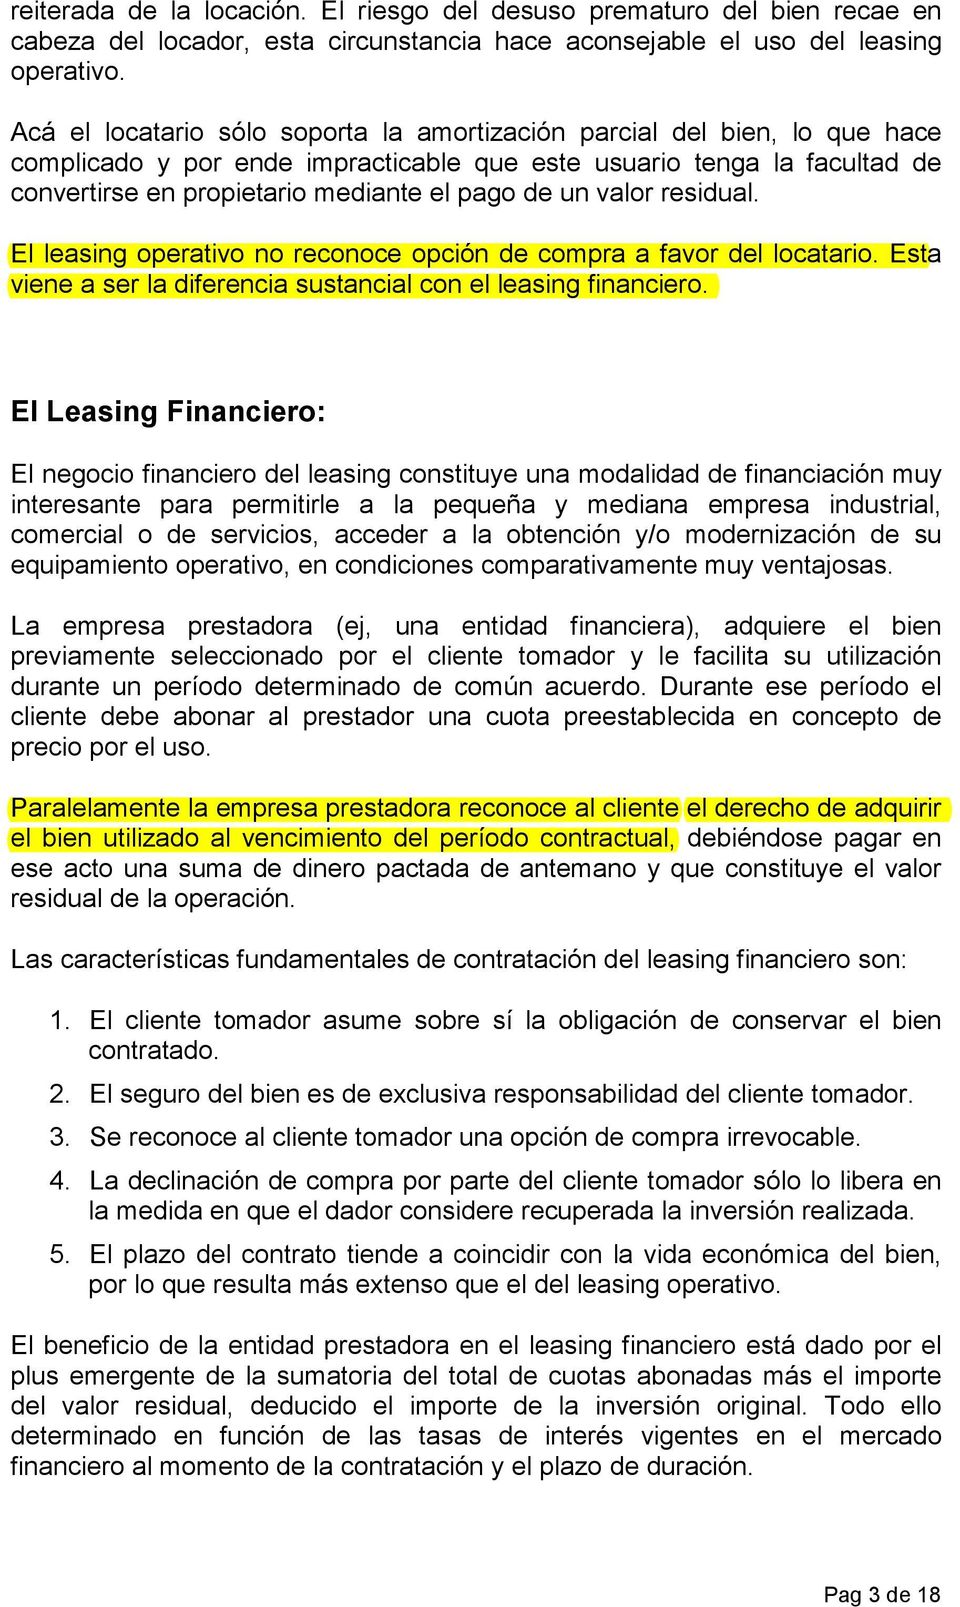 valor residual. El leasing operativo no reconoce opción de compra a favor del locatario. Esta viene a ser la diferencia sustancial con el leasing financiero.